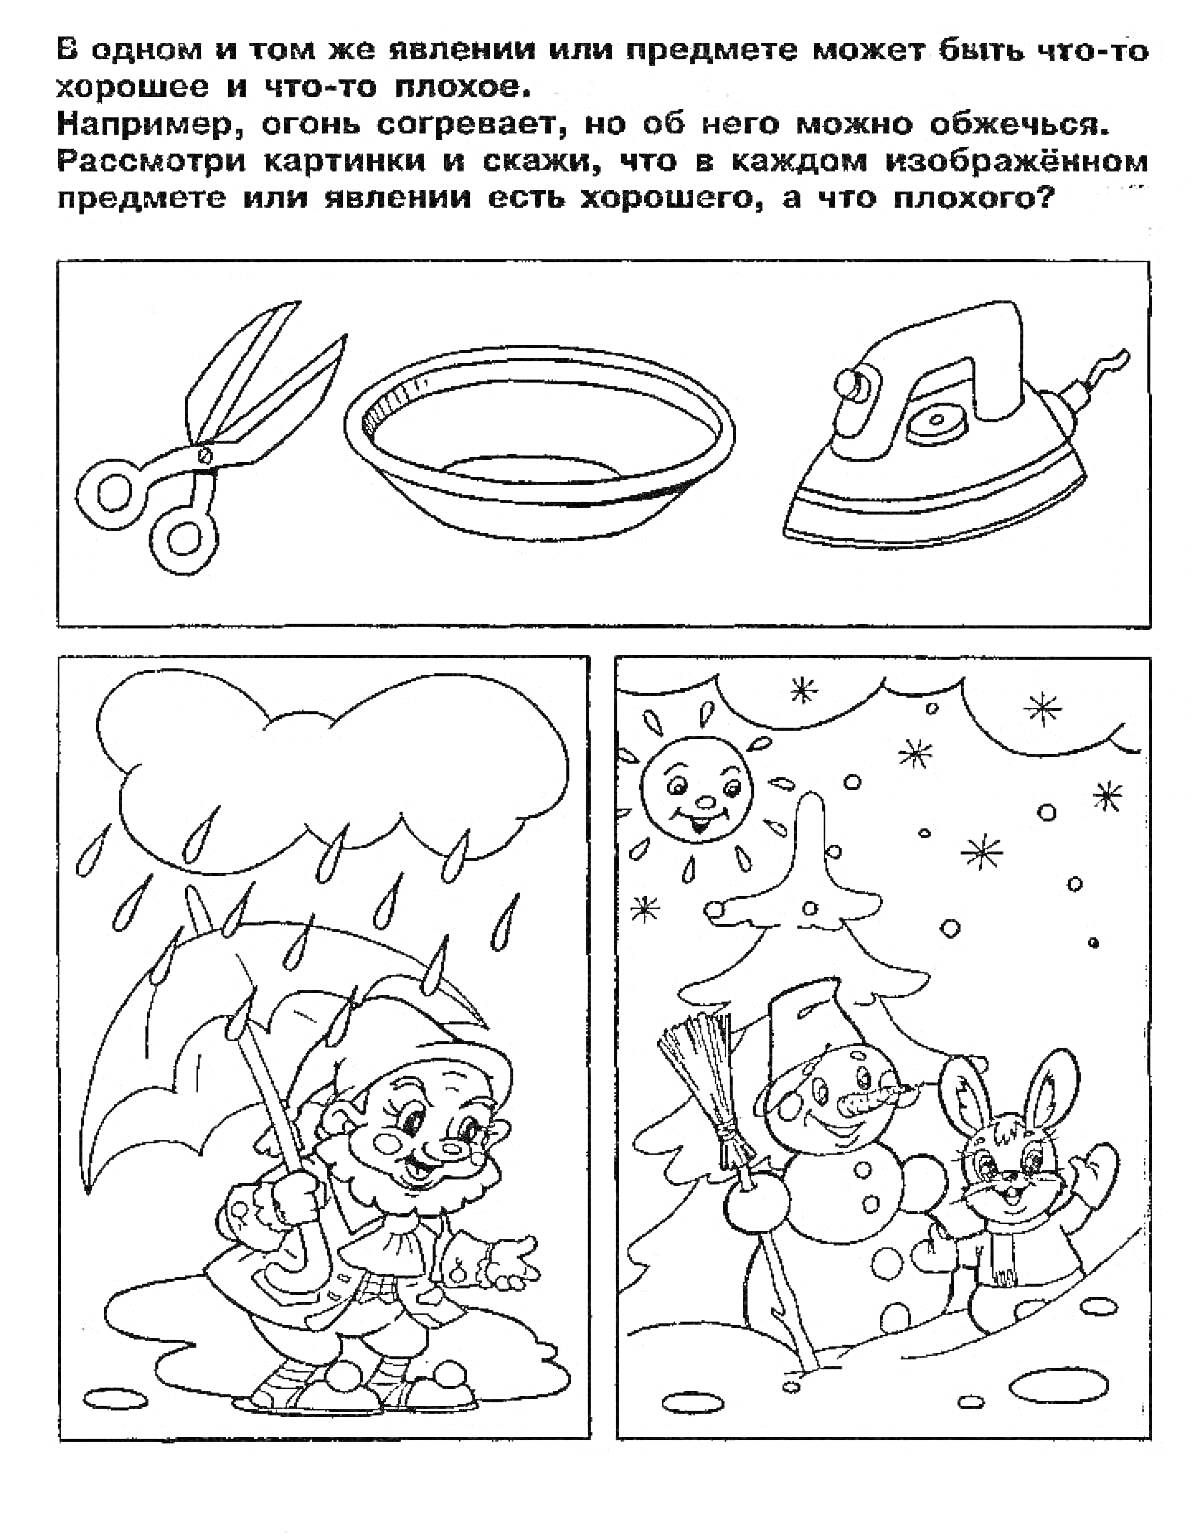 Ножницы, миска, утюг, мальчик с зонтиком под дождем, девочка с елочкой и зайчиком зимой